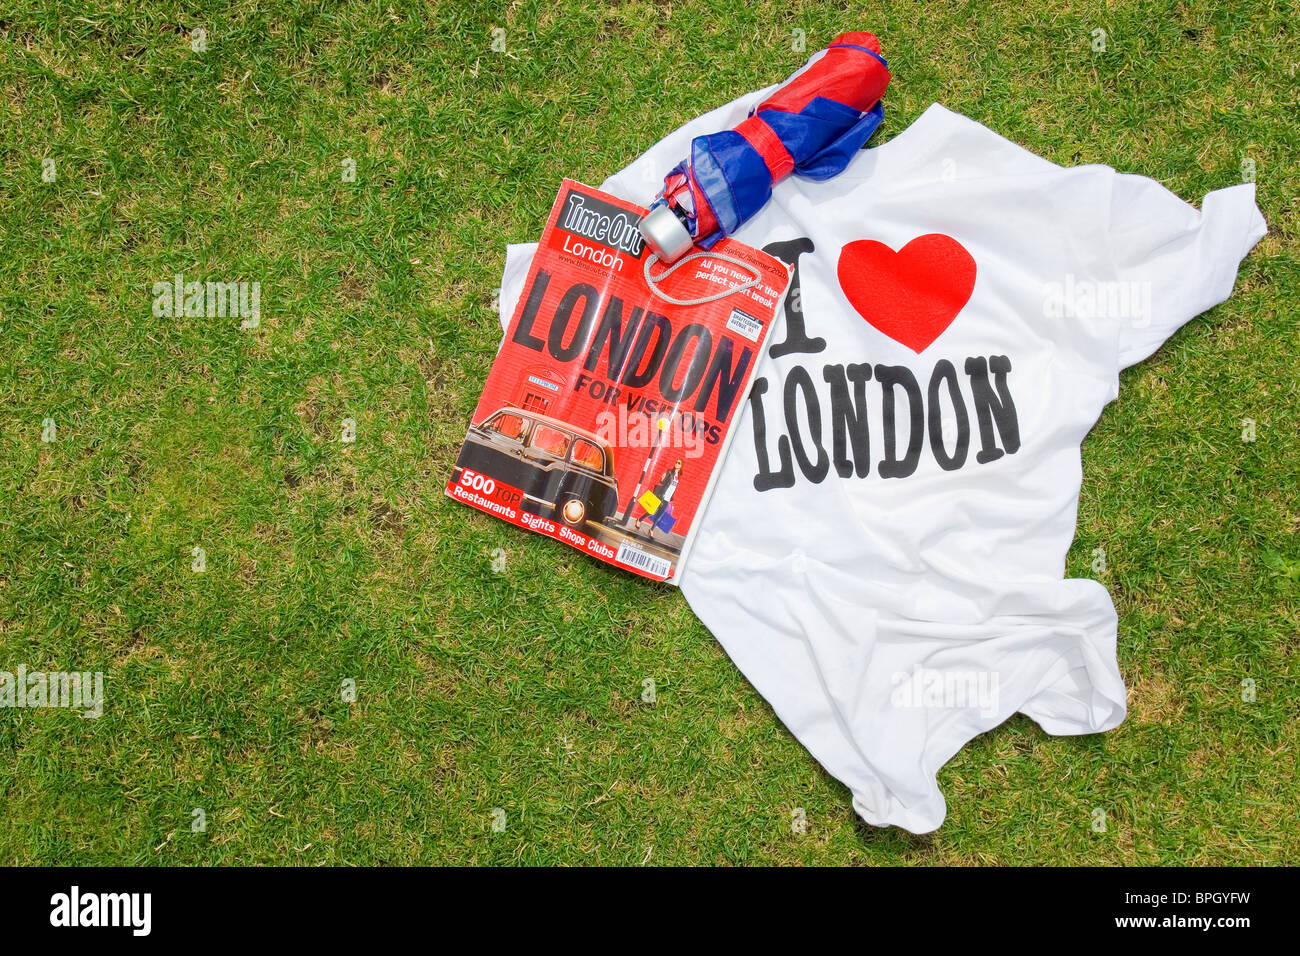 London still life with Union Jack parapluie, j'aime London T-shirt et une copie d'un magazine de Londres. Banque D'Images